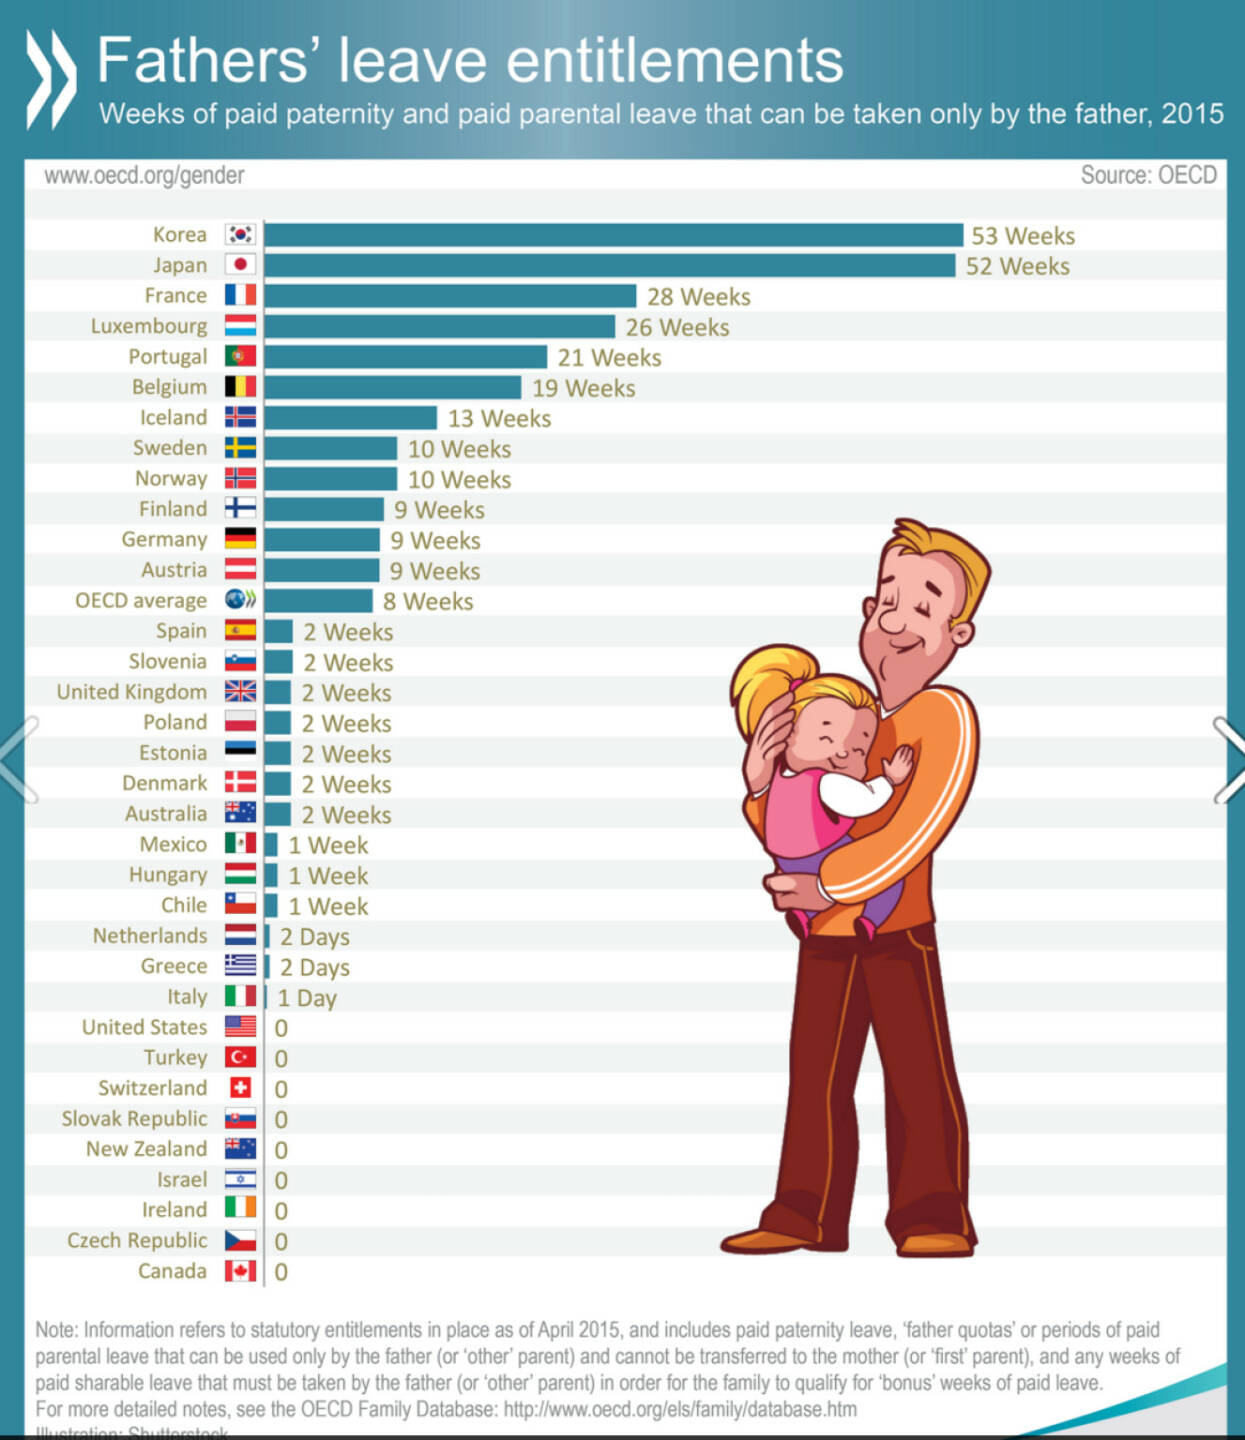 Ländervergleich: Vaterschaftsurlaub bzw. Elterngeld für Väter in der OECD. Weitere Informationen zum Thema: http://bit.ly/1TQe5h1